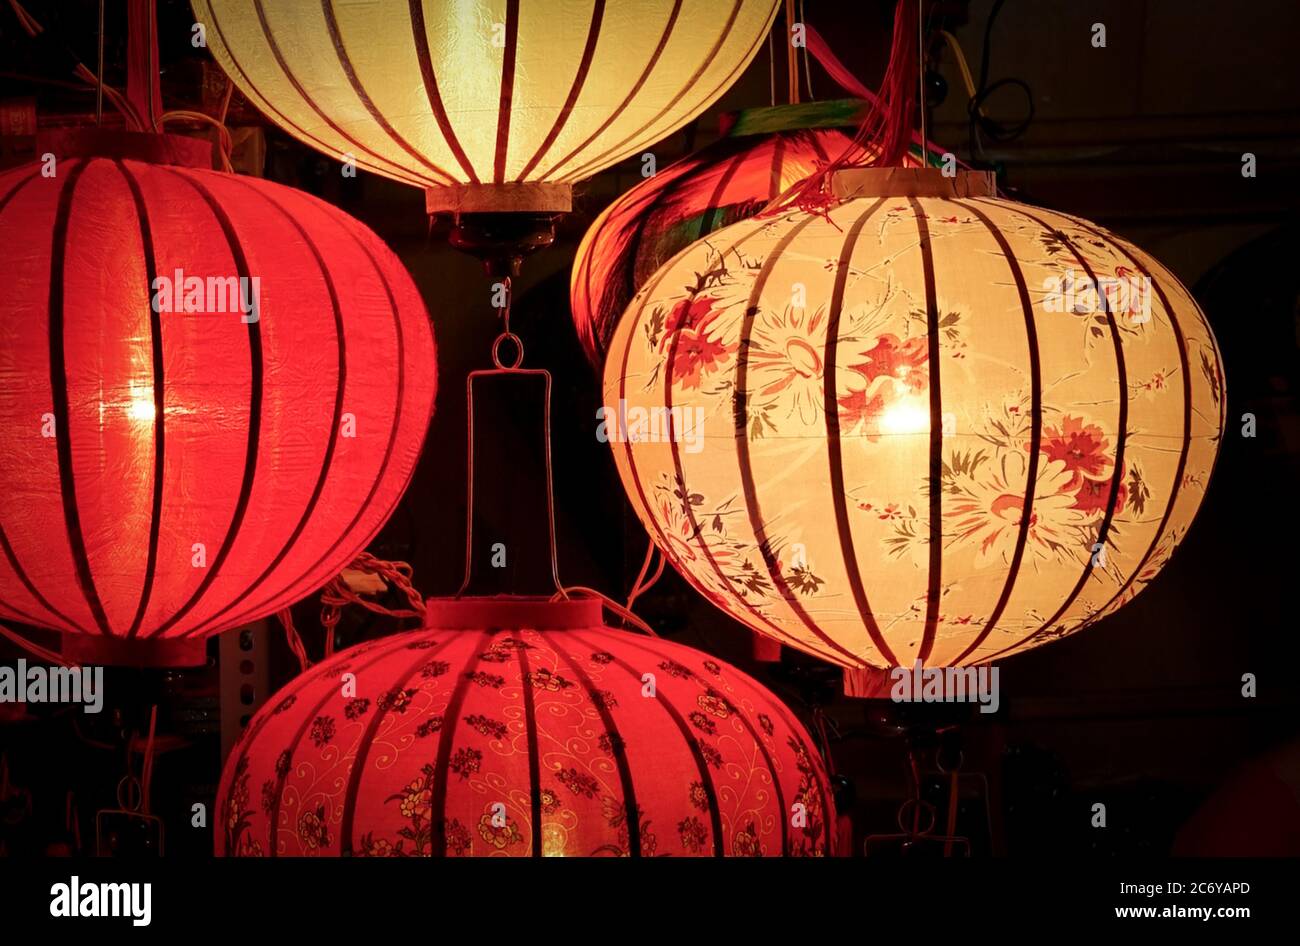 Lanternes asiatiques orientales illuminées. Fêtes ou fêtes pour le nouvel an chinois ou le milieu de l'automne. Banque D'Images